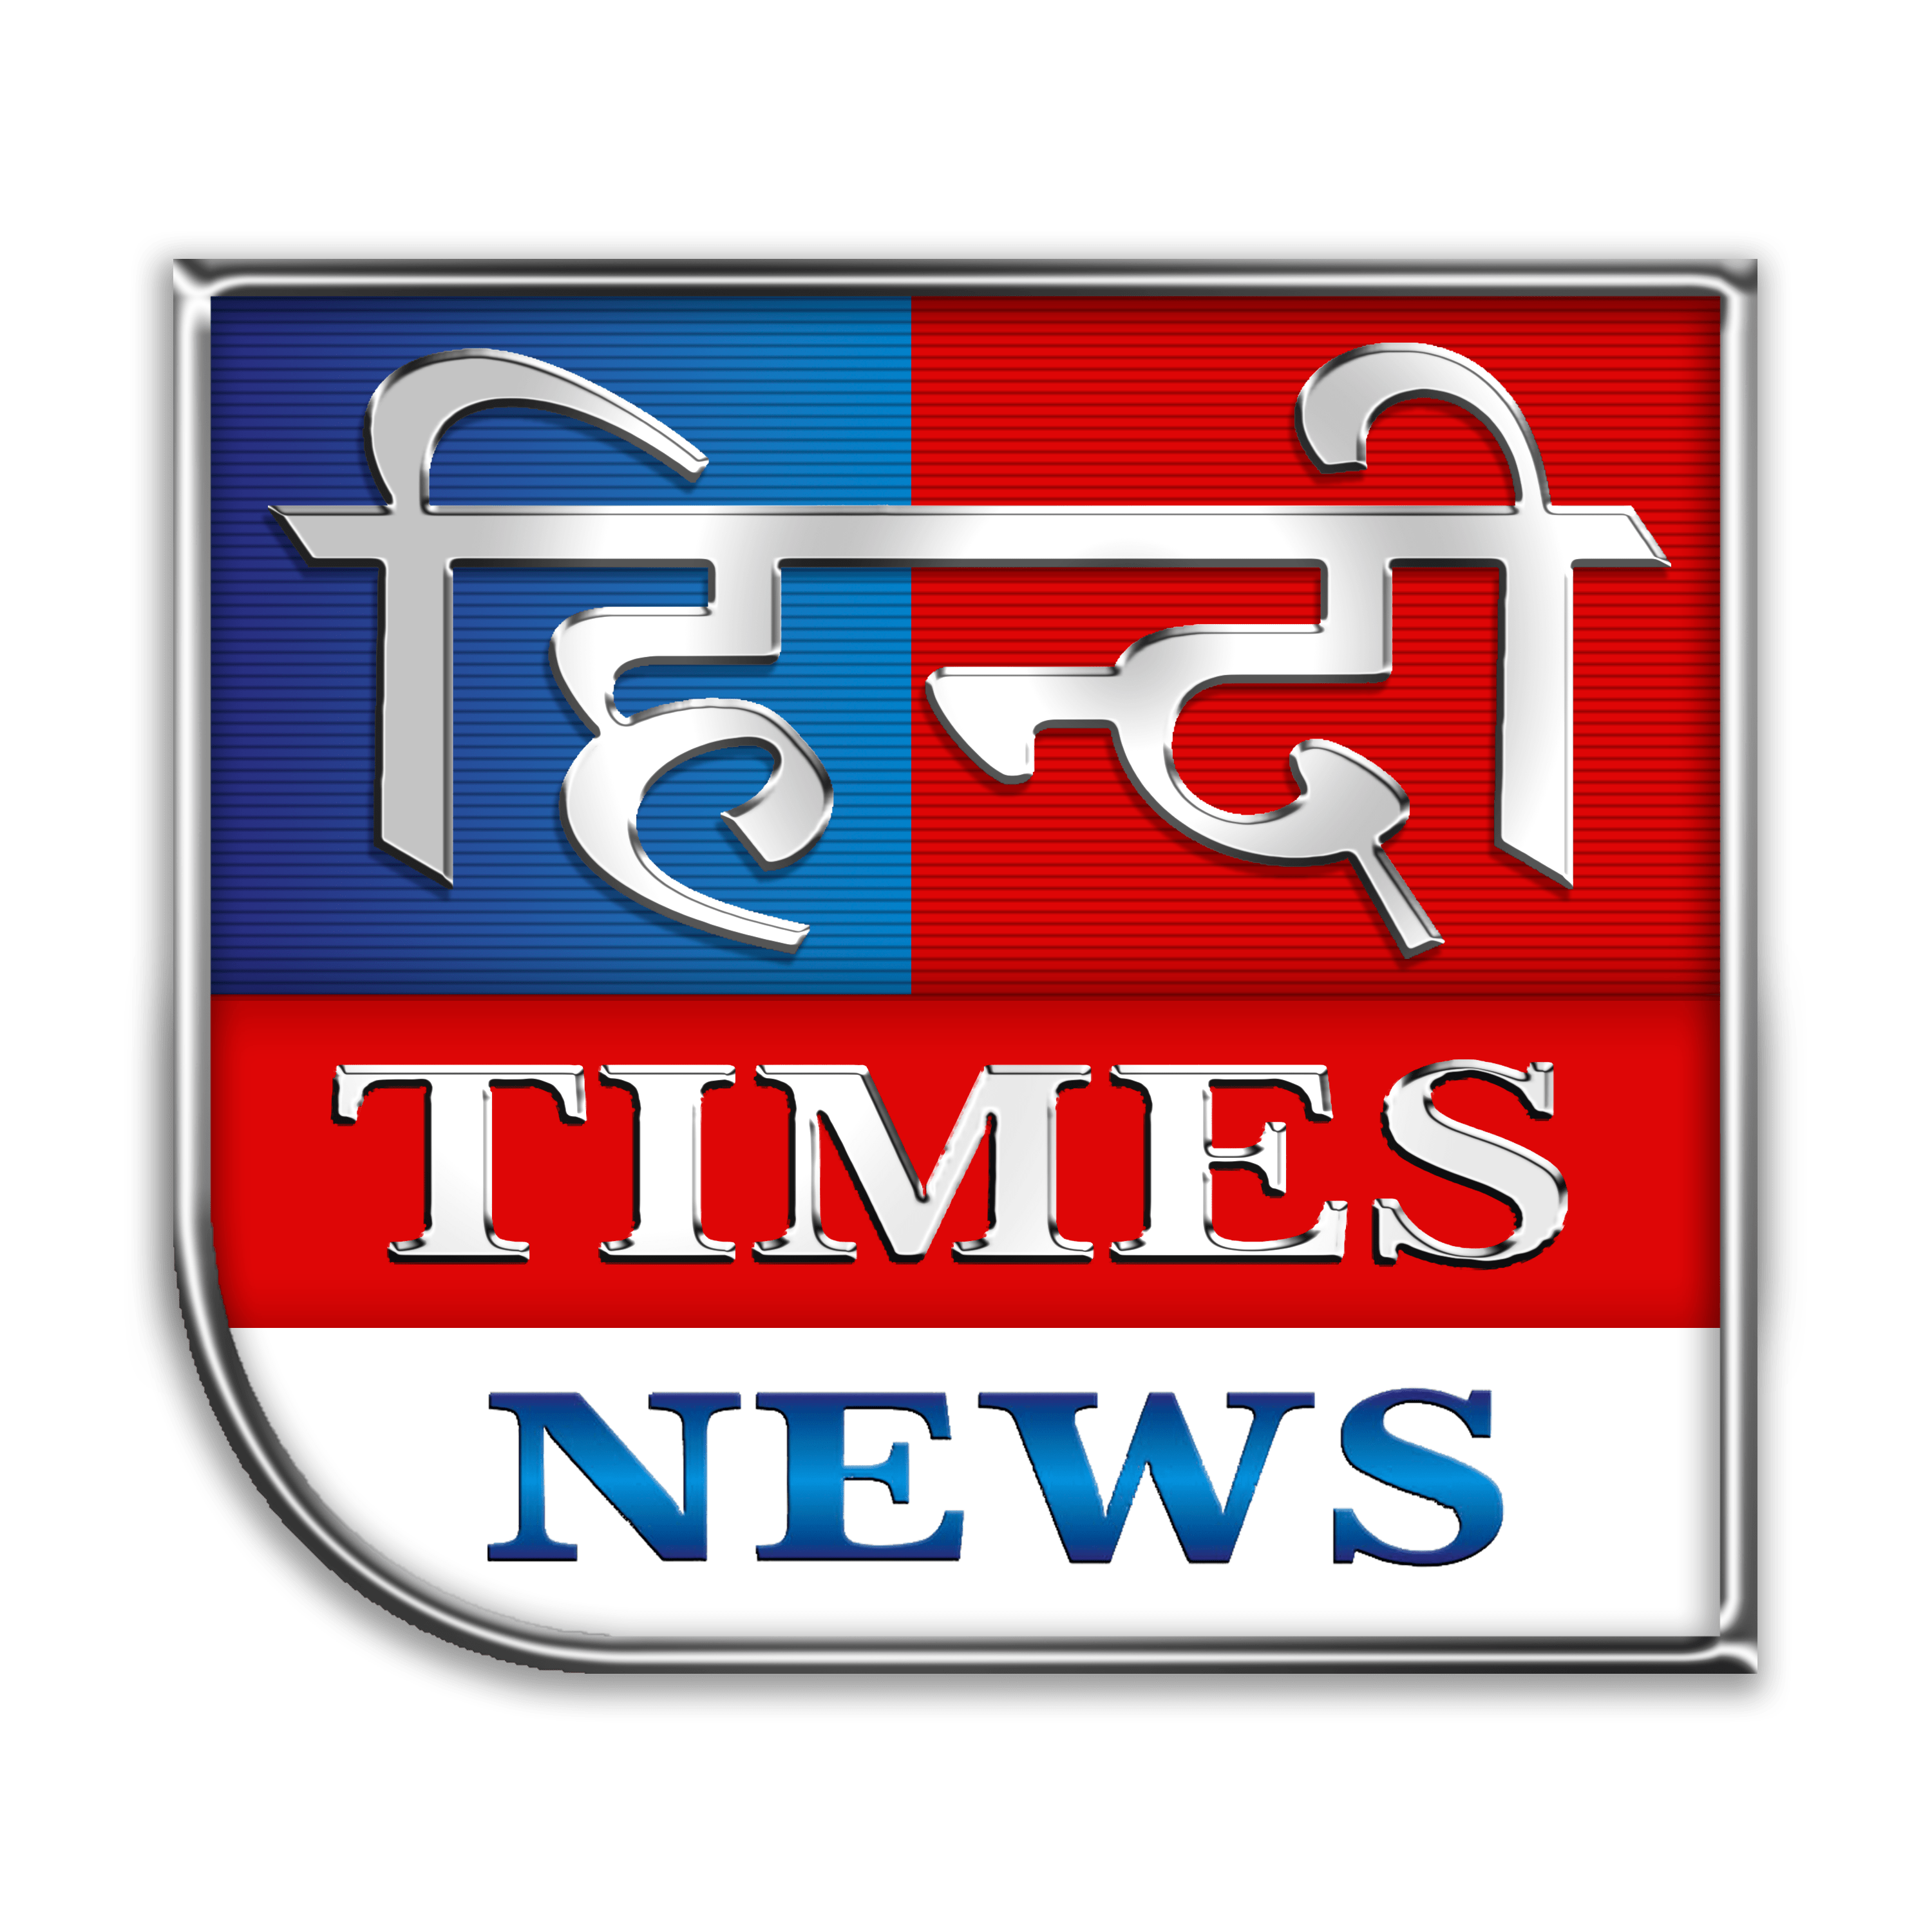 Hindi Times News